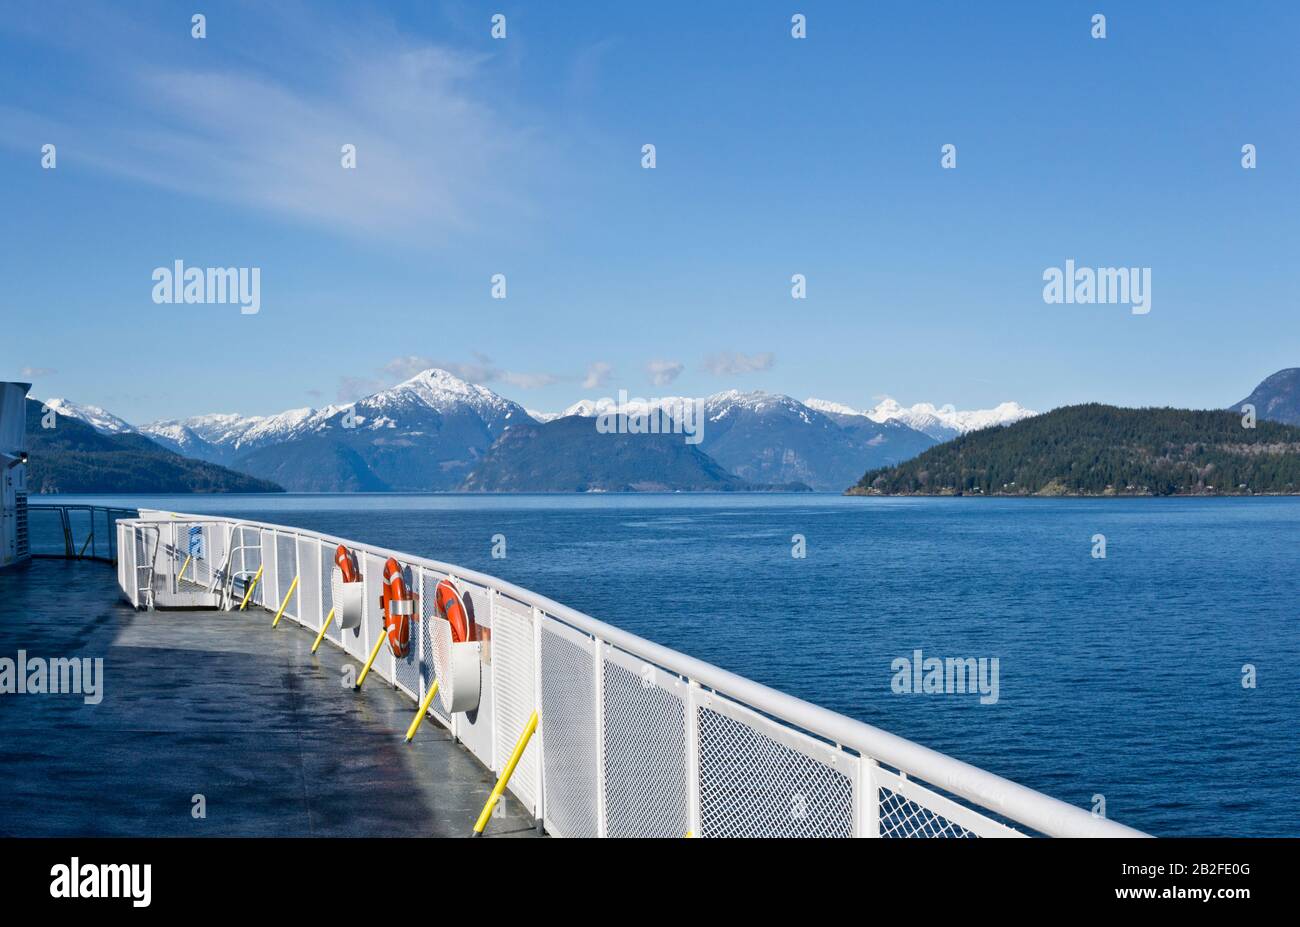 Malerische schneebedeckte Küstenberge von einem BC-Fährdeck aus, das im Winter zur Sunshine Coast, British Columbia, unterwegs ist. BC Ferries. Stockfoto